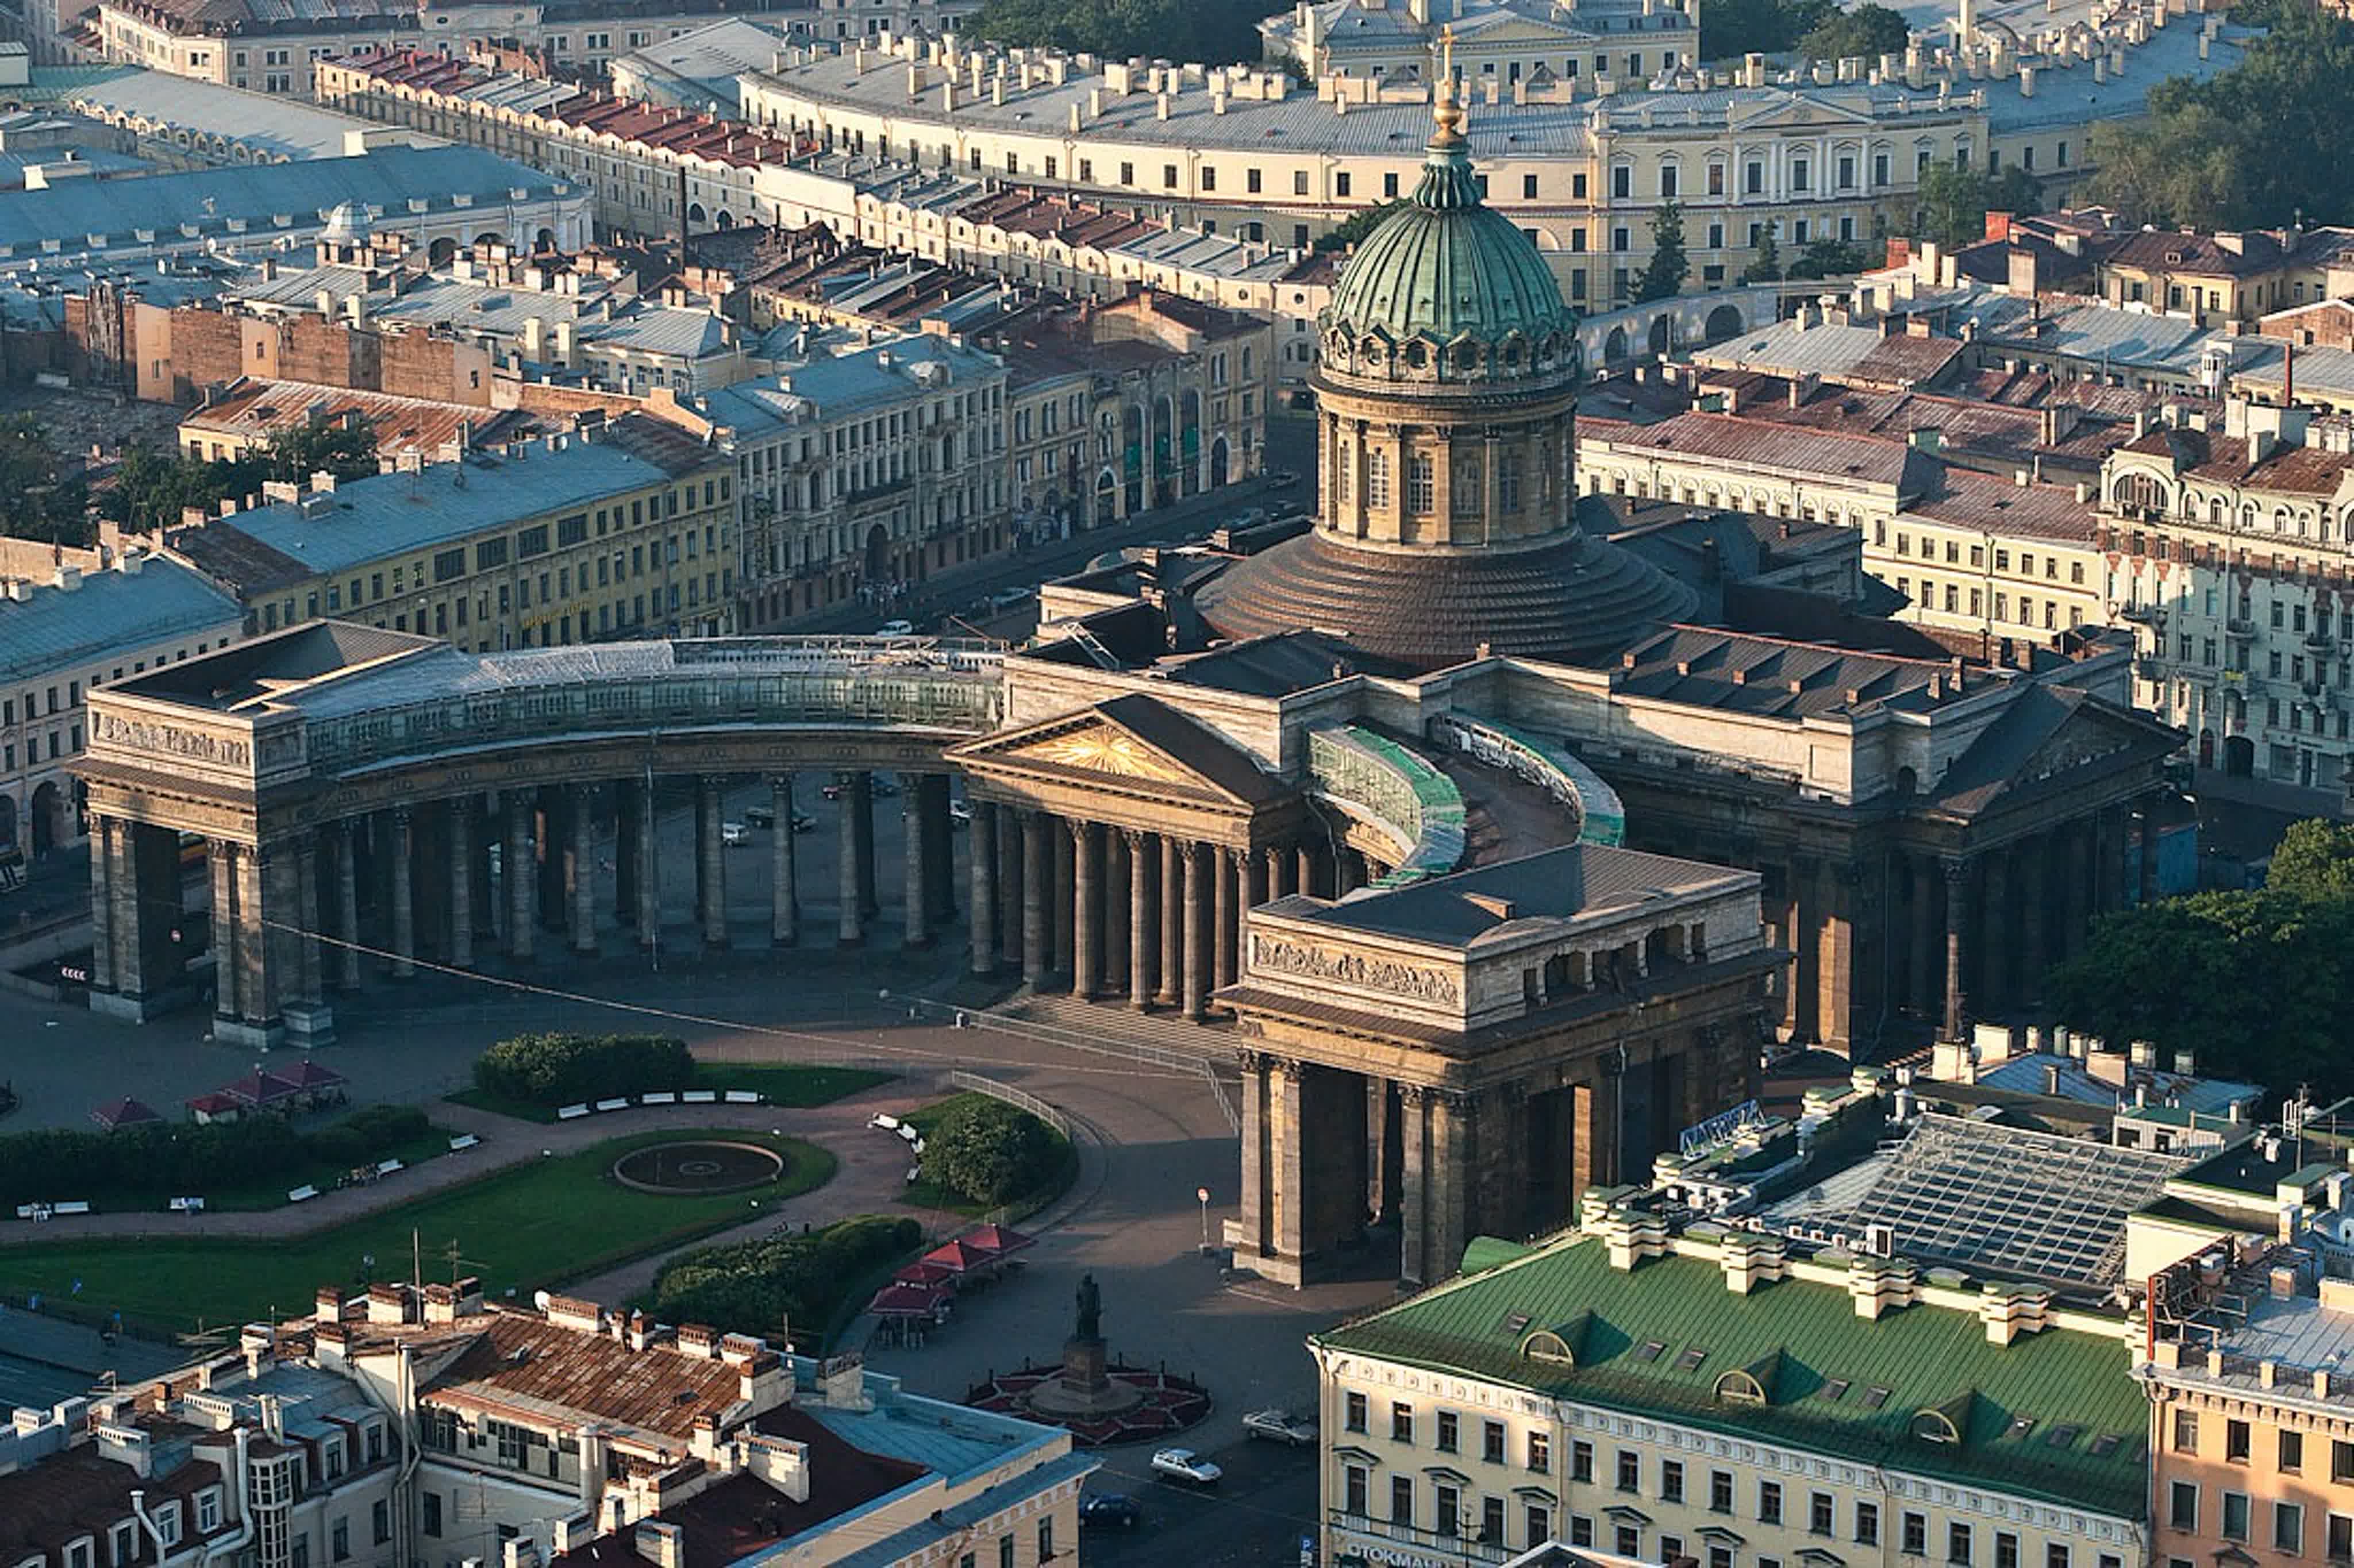 площадь казанского собора